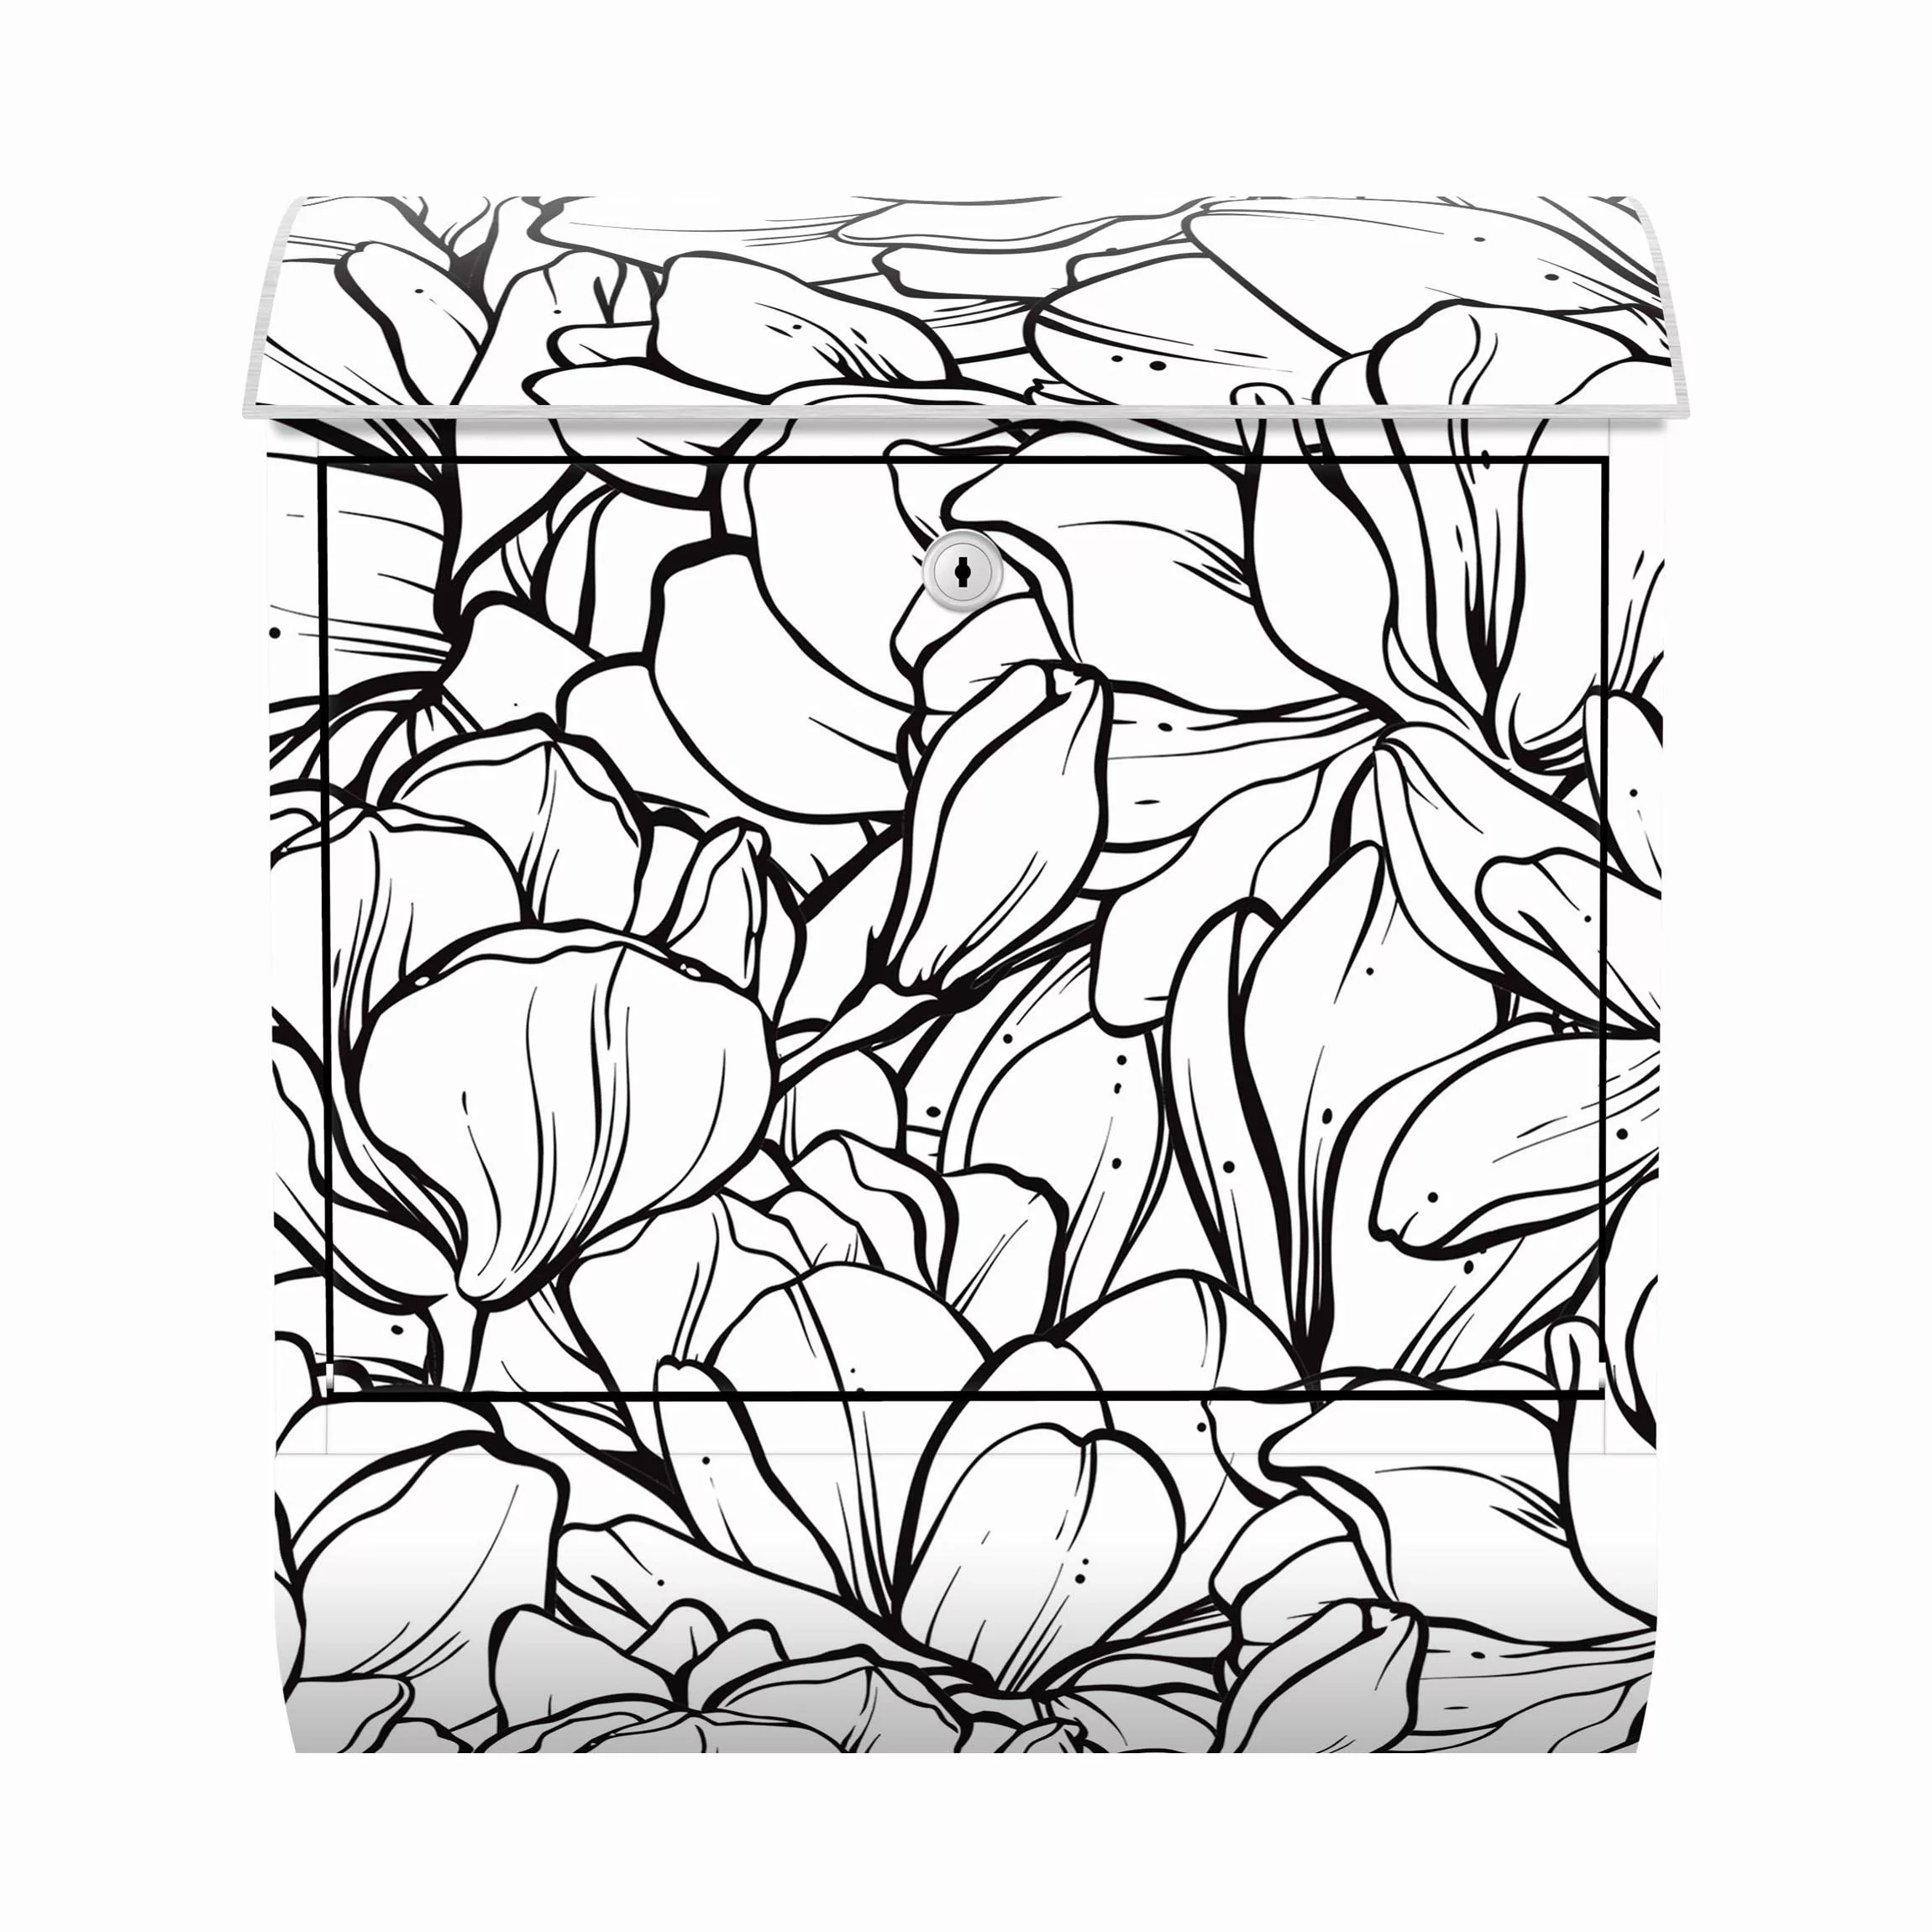 Briefkasten Magnolien Blütenmeer Schwarz Weiß günstig online kaufen